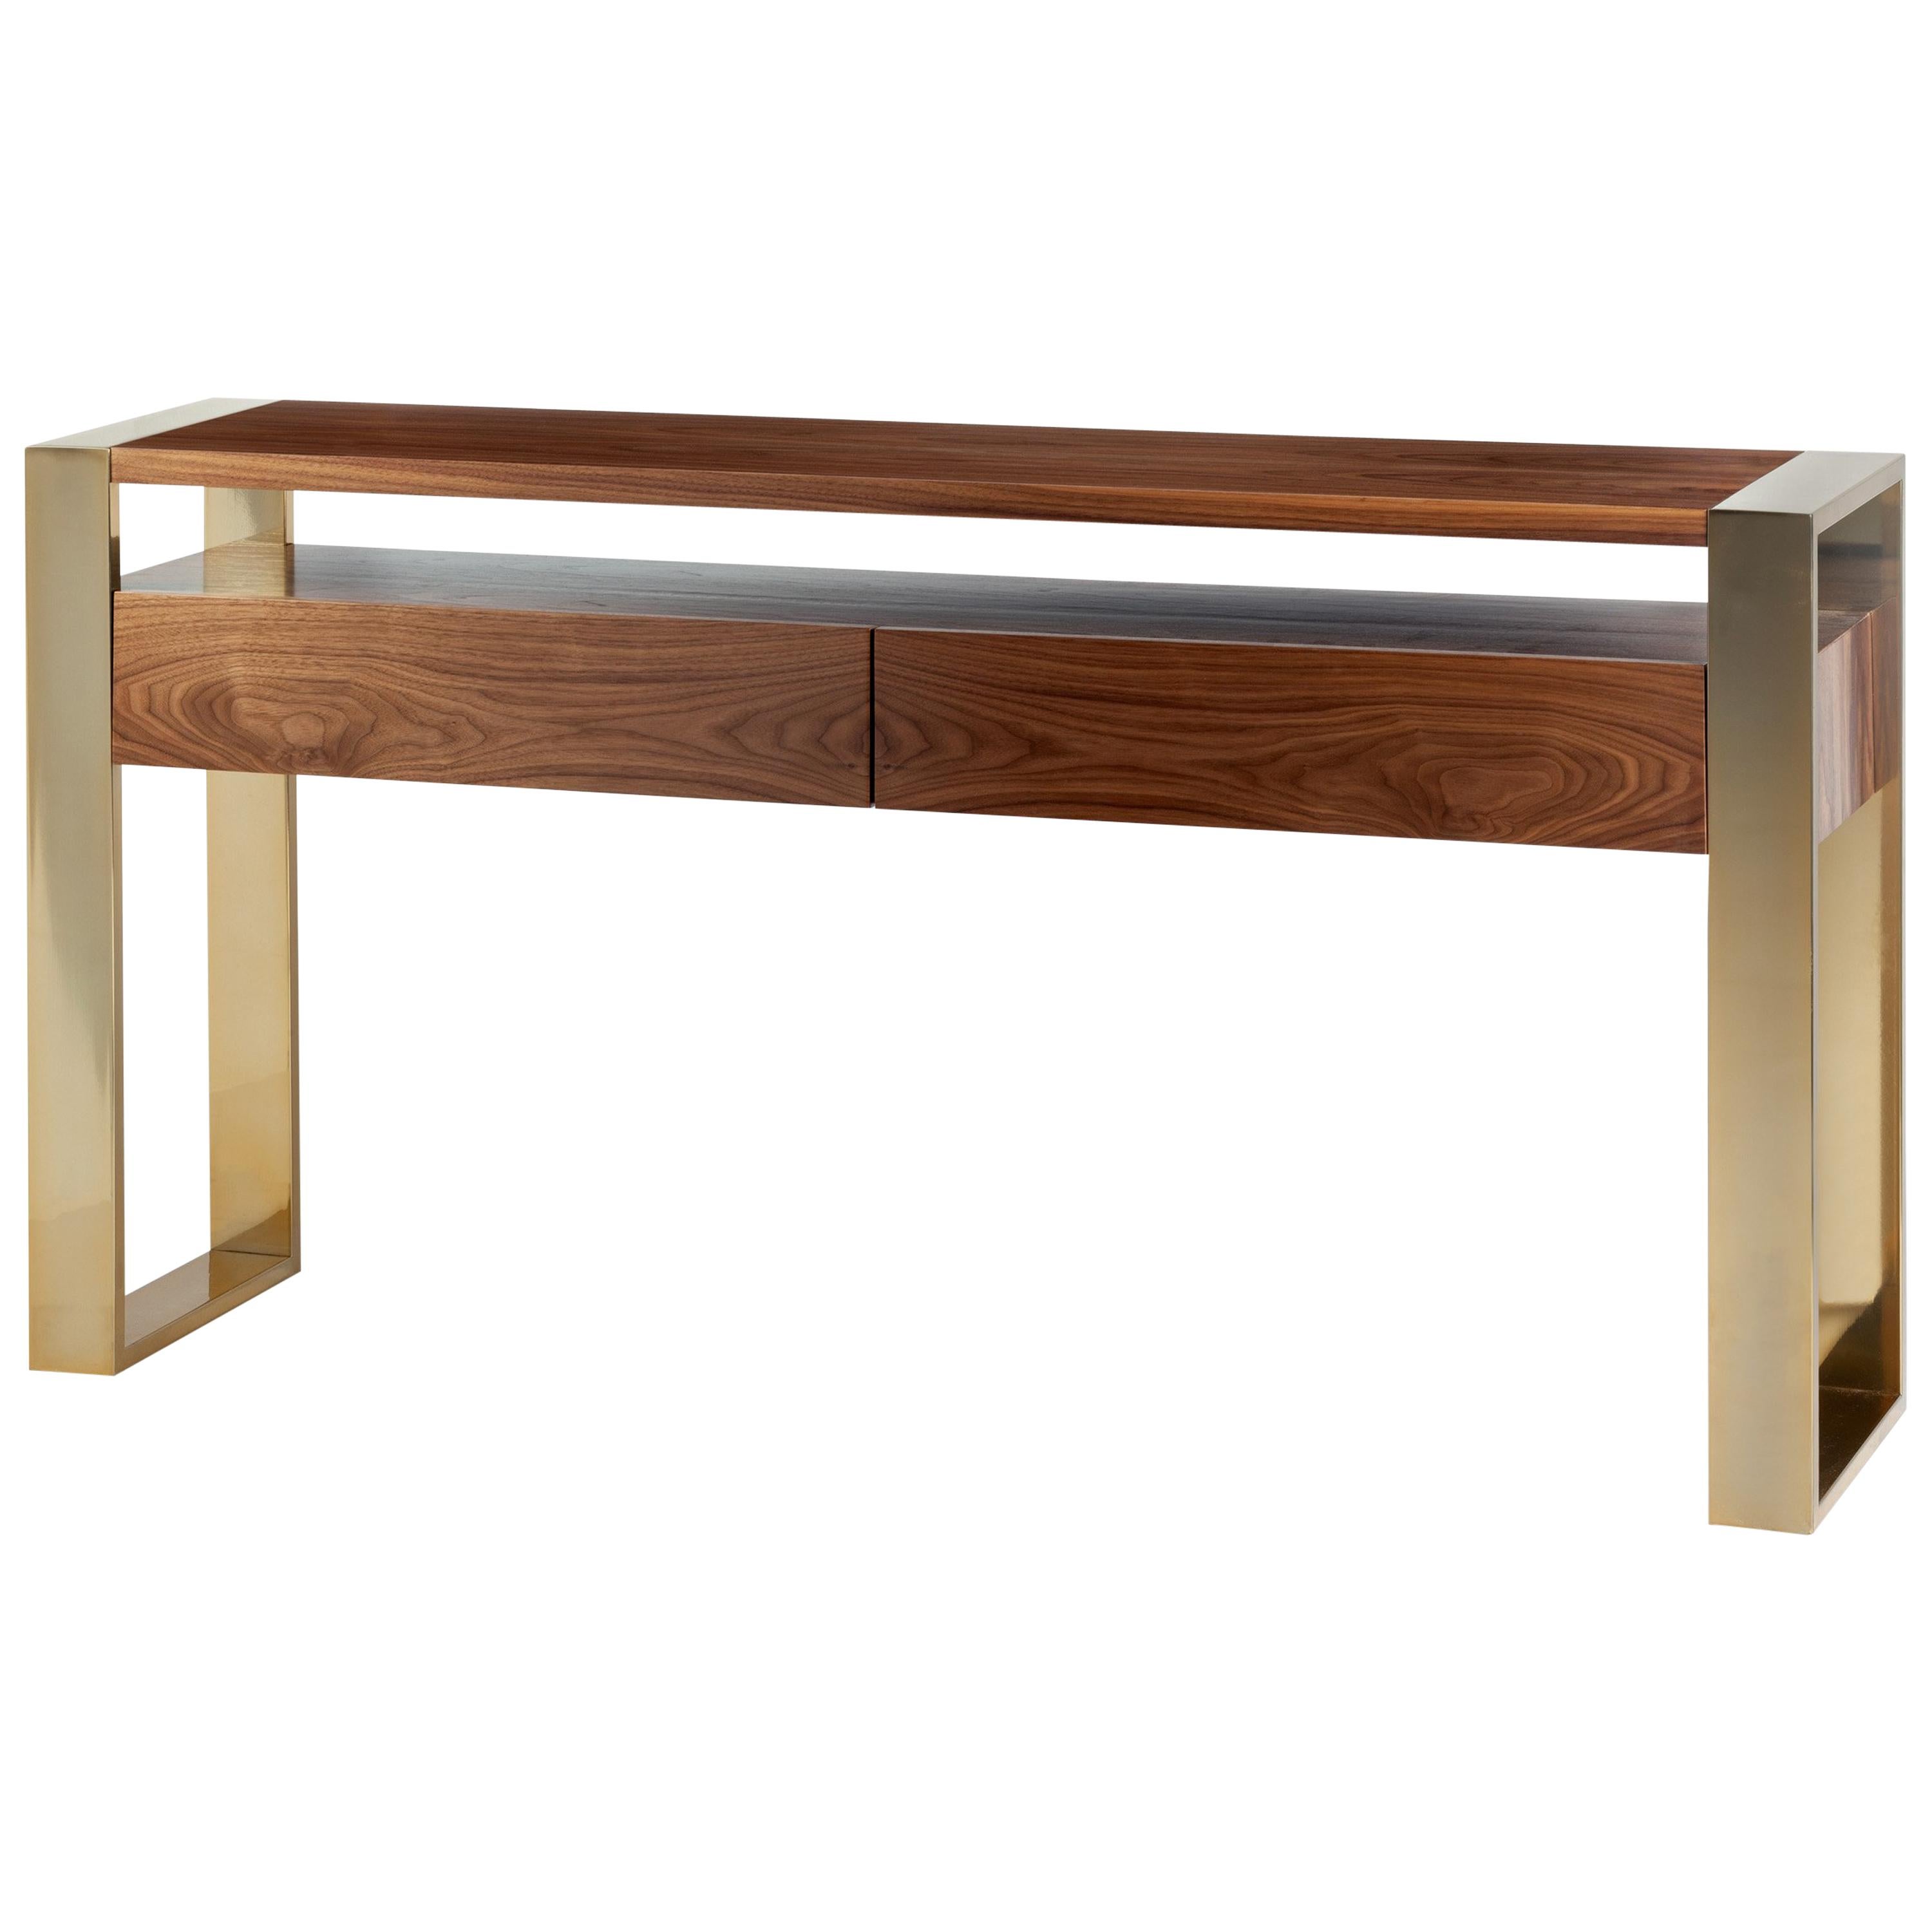 Table console en bois et laiton